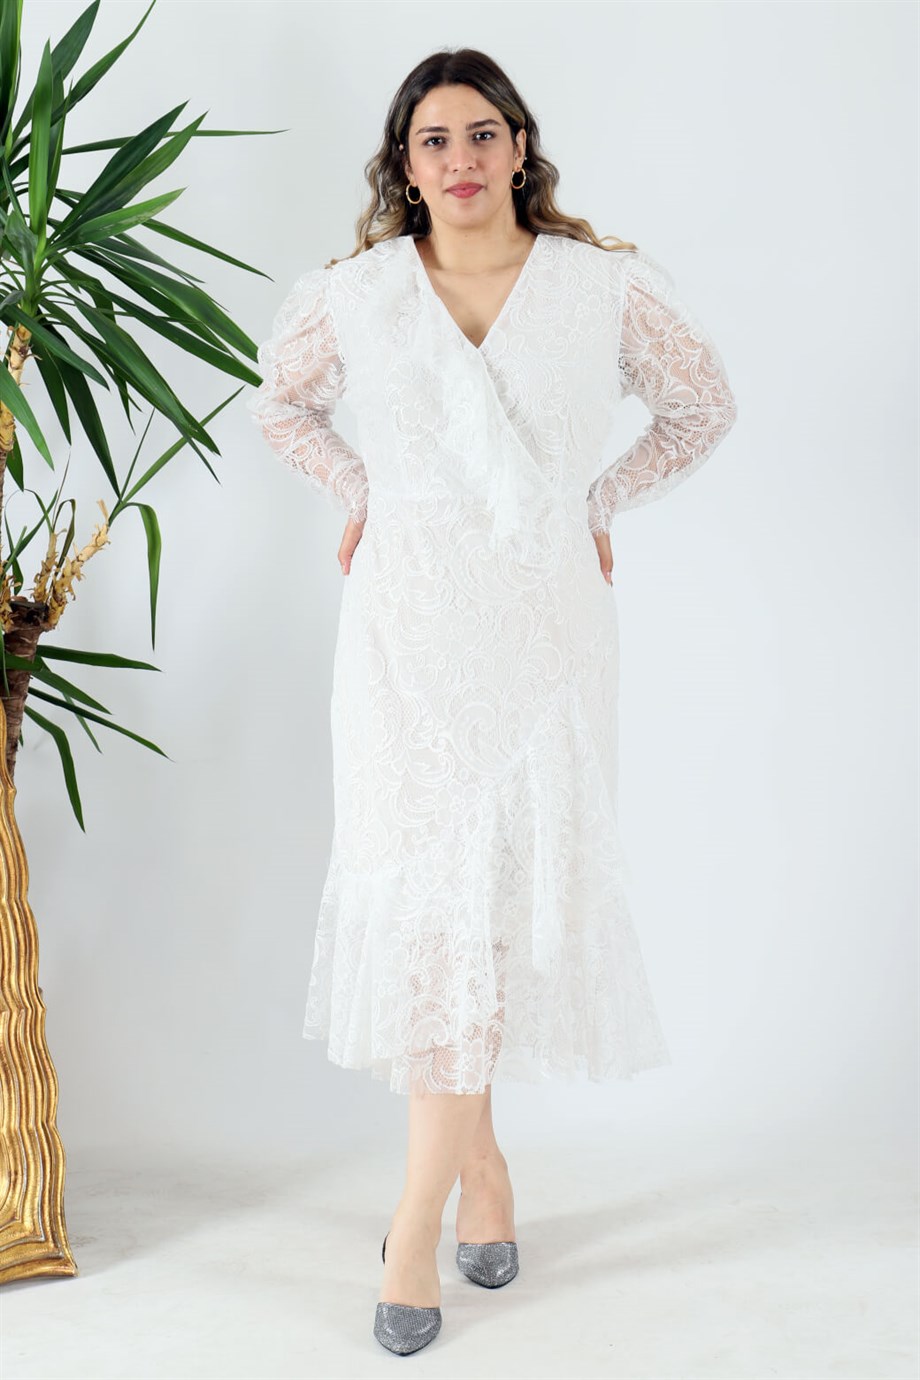 Büyük Beden Dantela Elbise Beyaz| Bedrinxxl | Büyük Beden Abiye Elbise,  Tunik, Genç Buyuk Beden Elbise Tesettür Modelleri ve Fiyatları